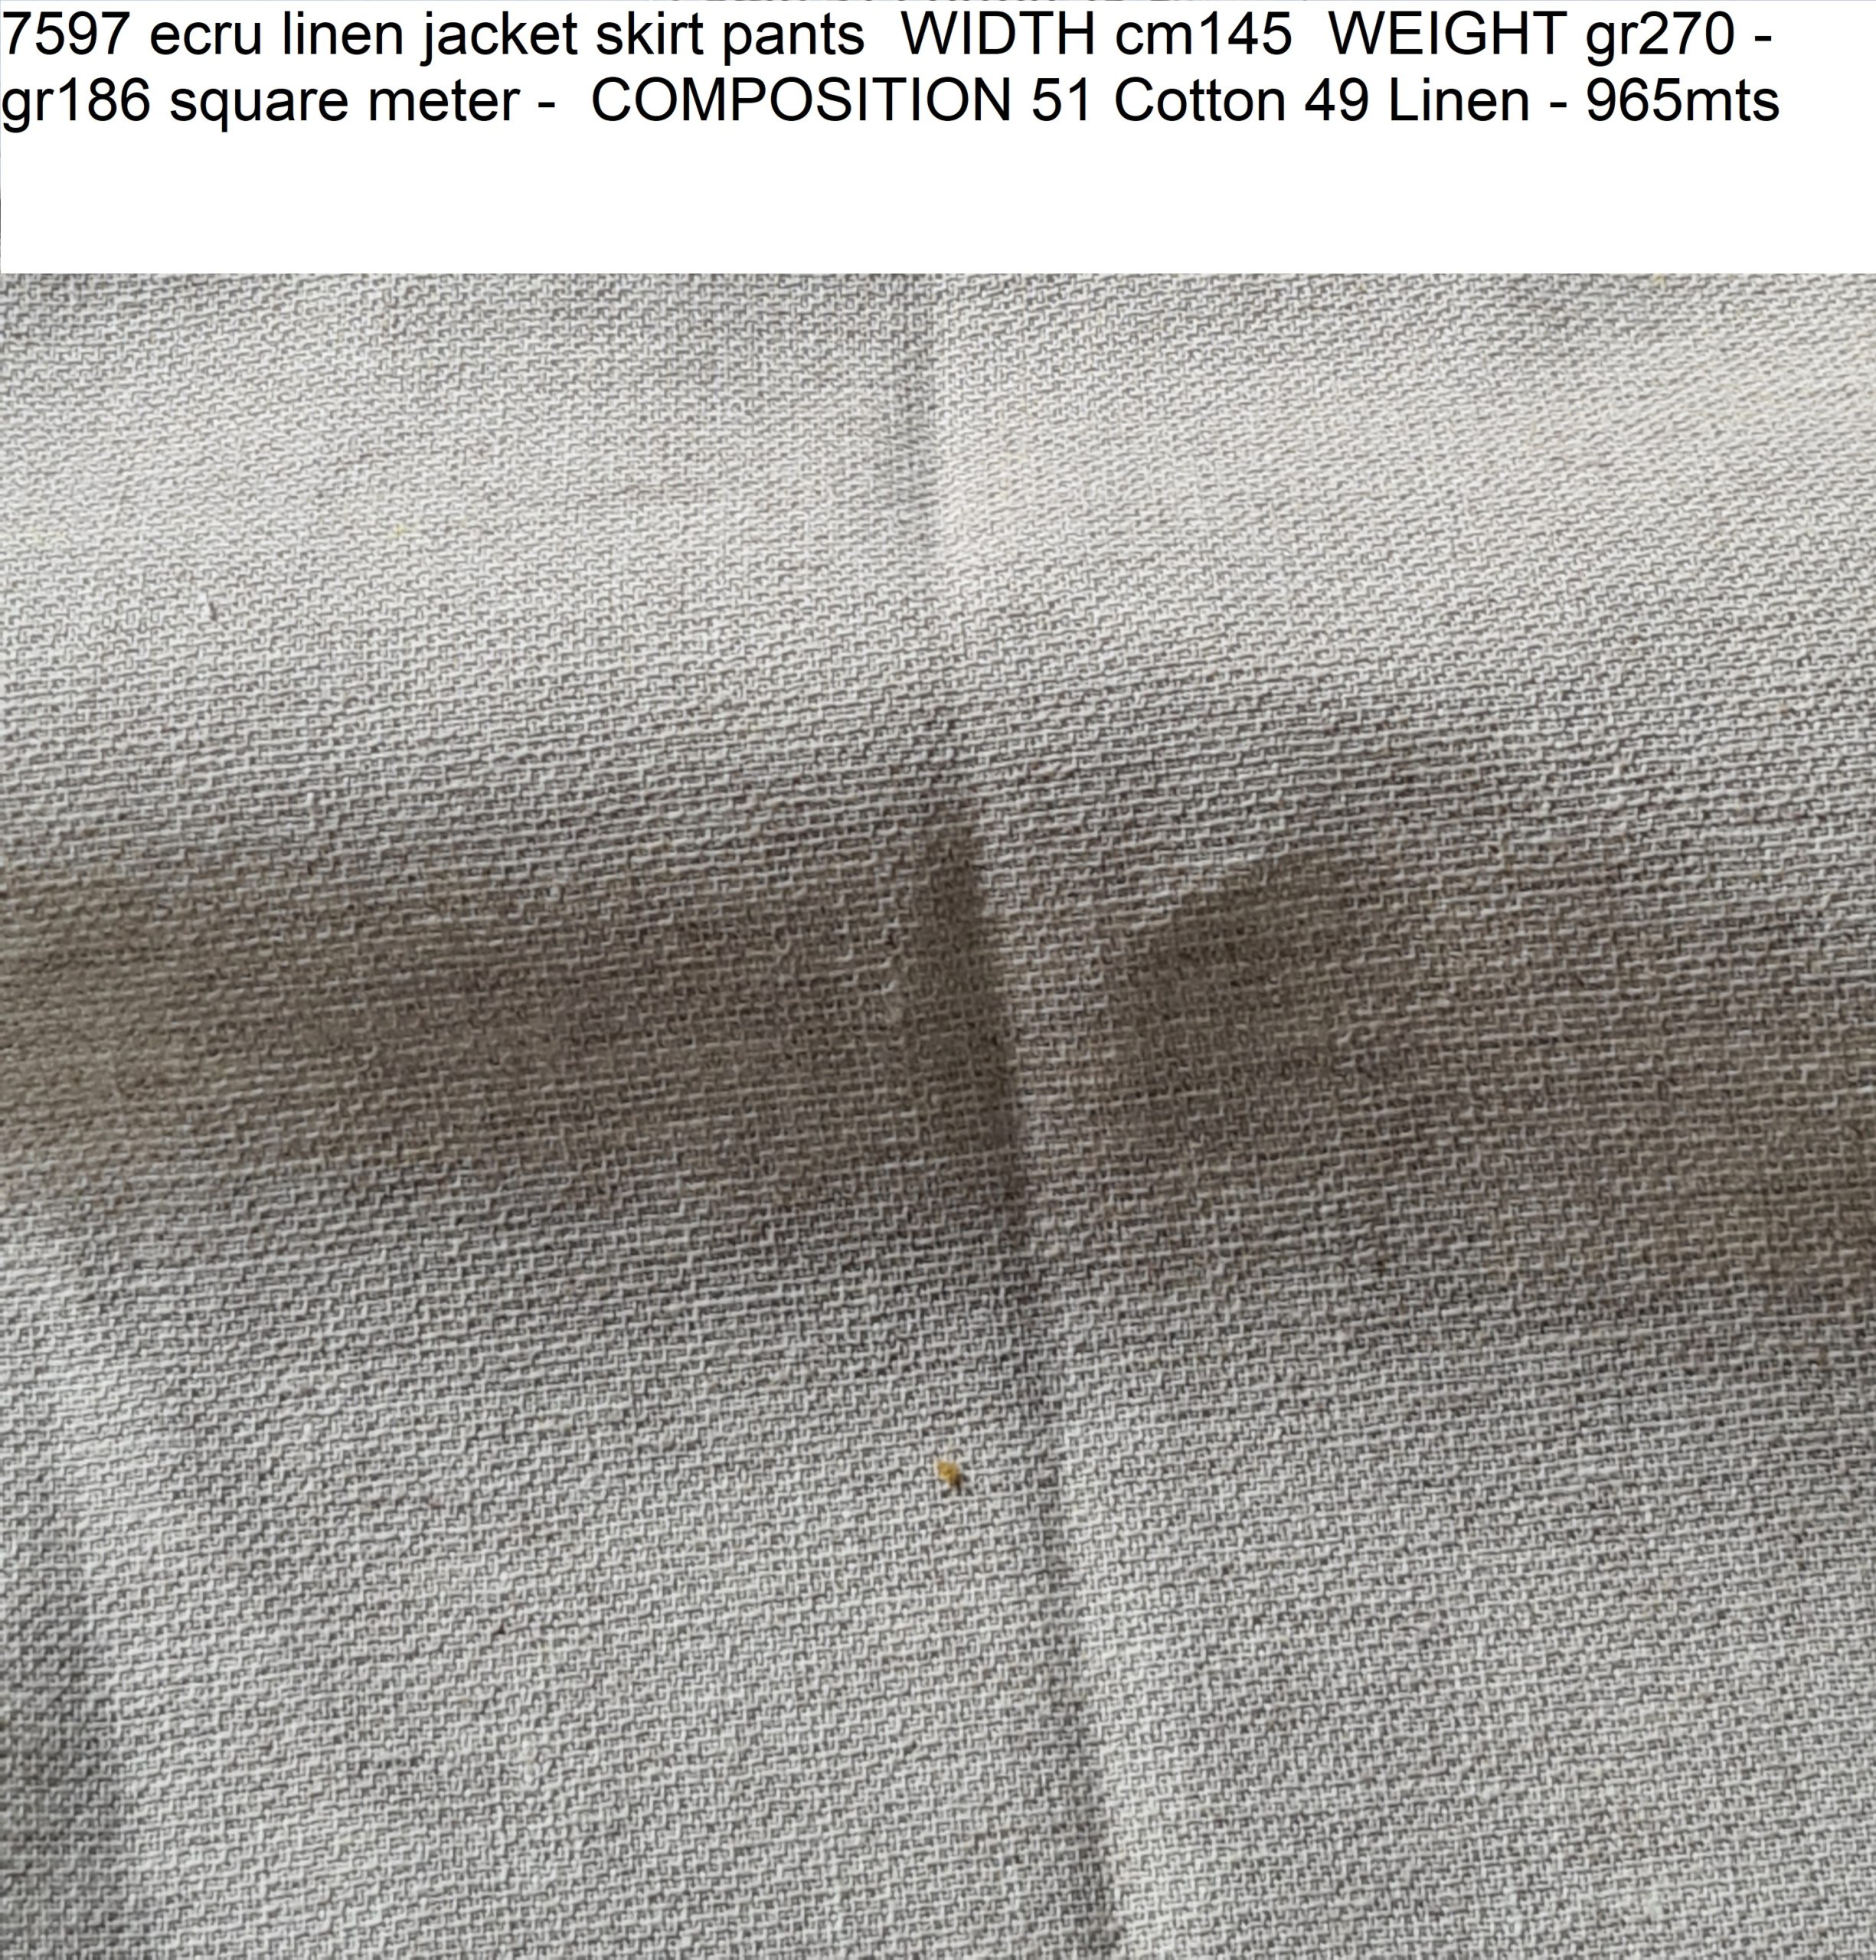 7597 ecru linen jacket skirt pants WIDTH cm145 WEIGHT gr270 - gr186 square meter - COMPOSITION 51 Cotton 49 Linen - 965mts